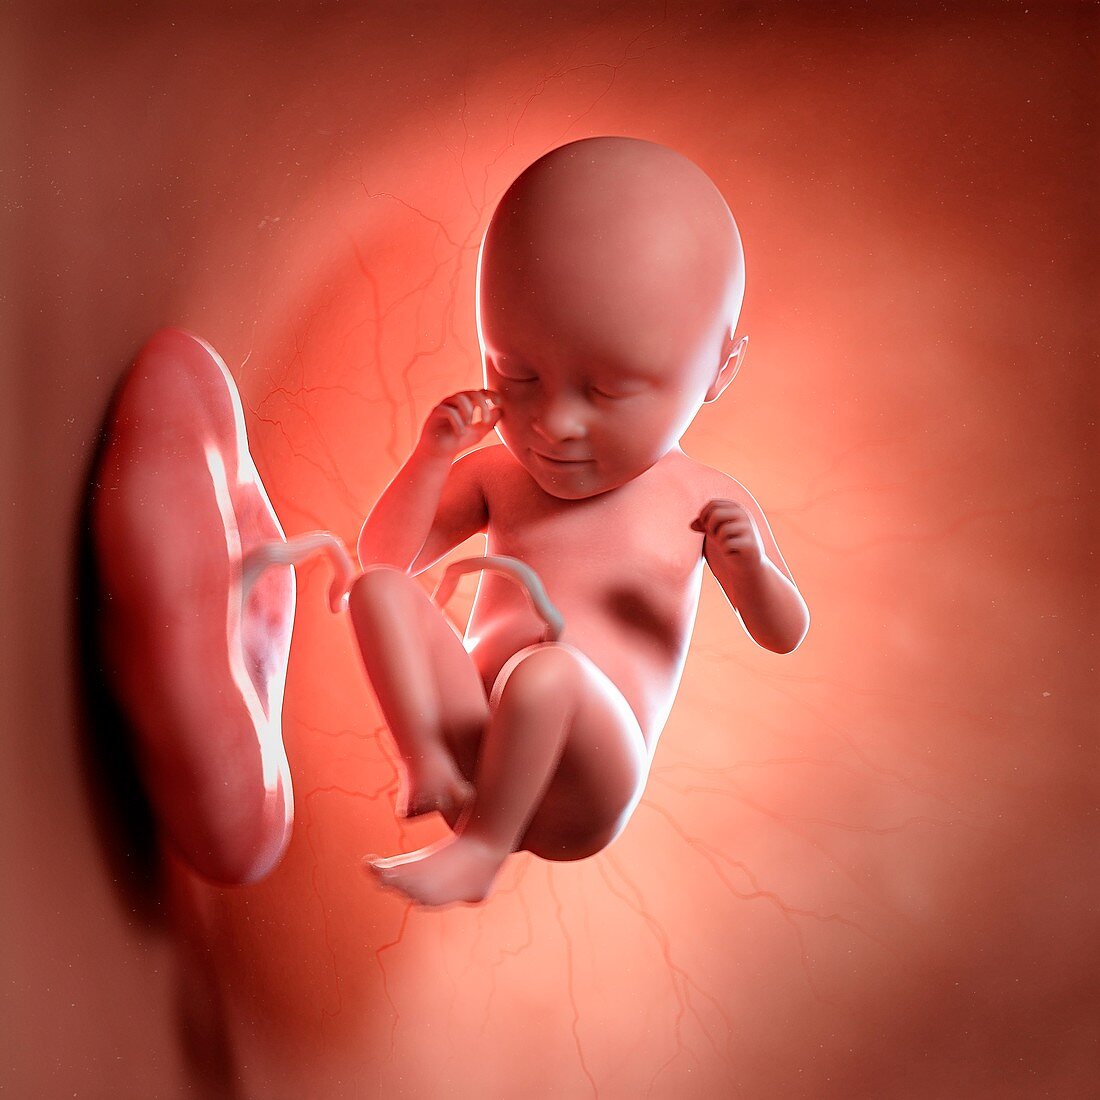 Human foetus age 35 weeks, illustration